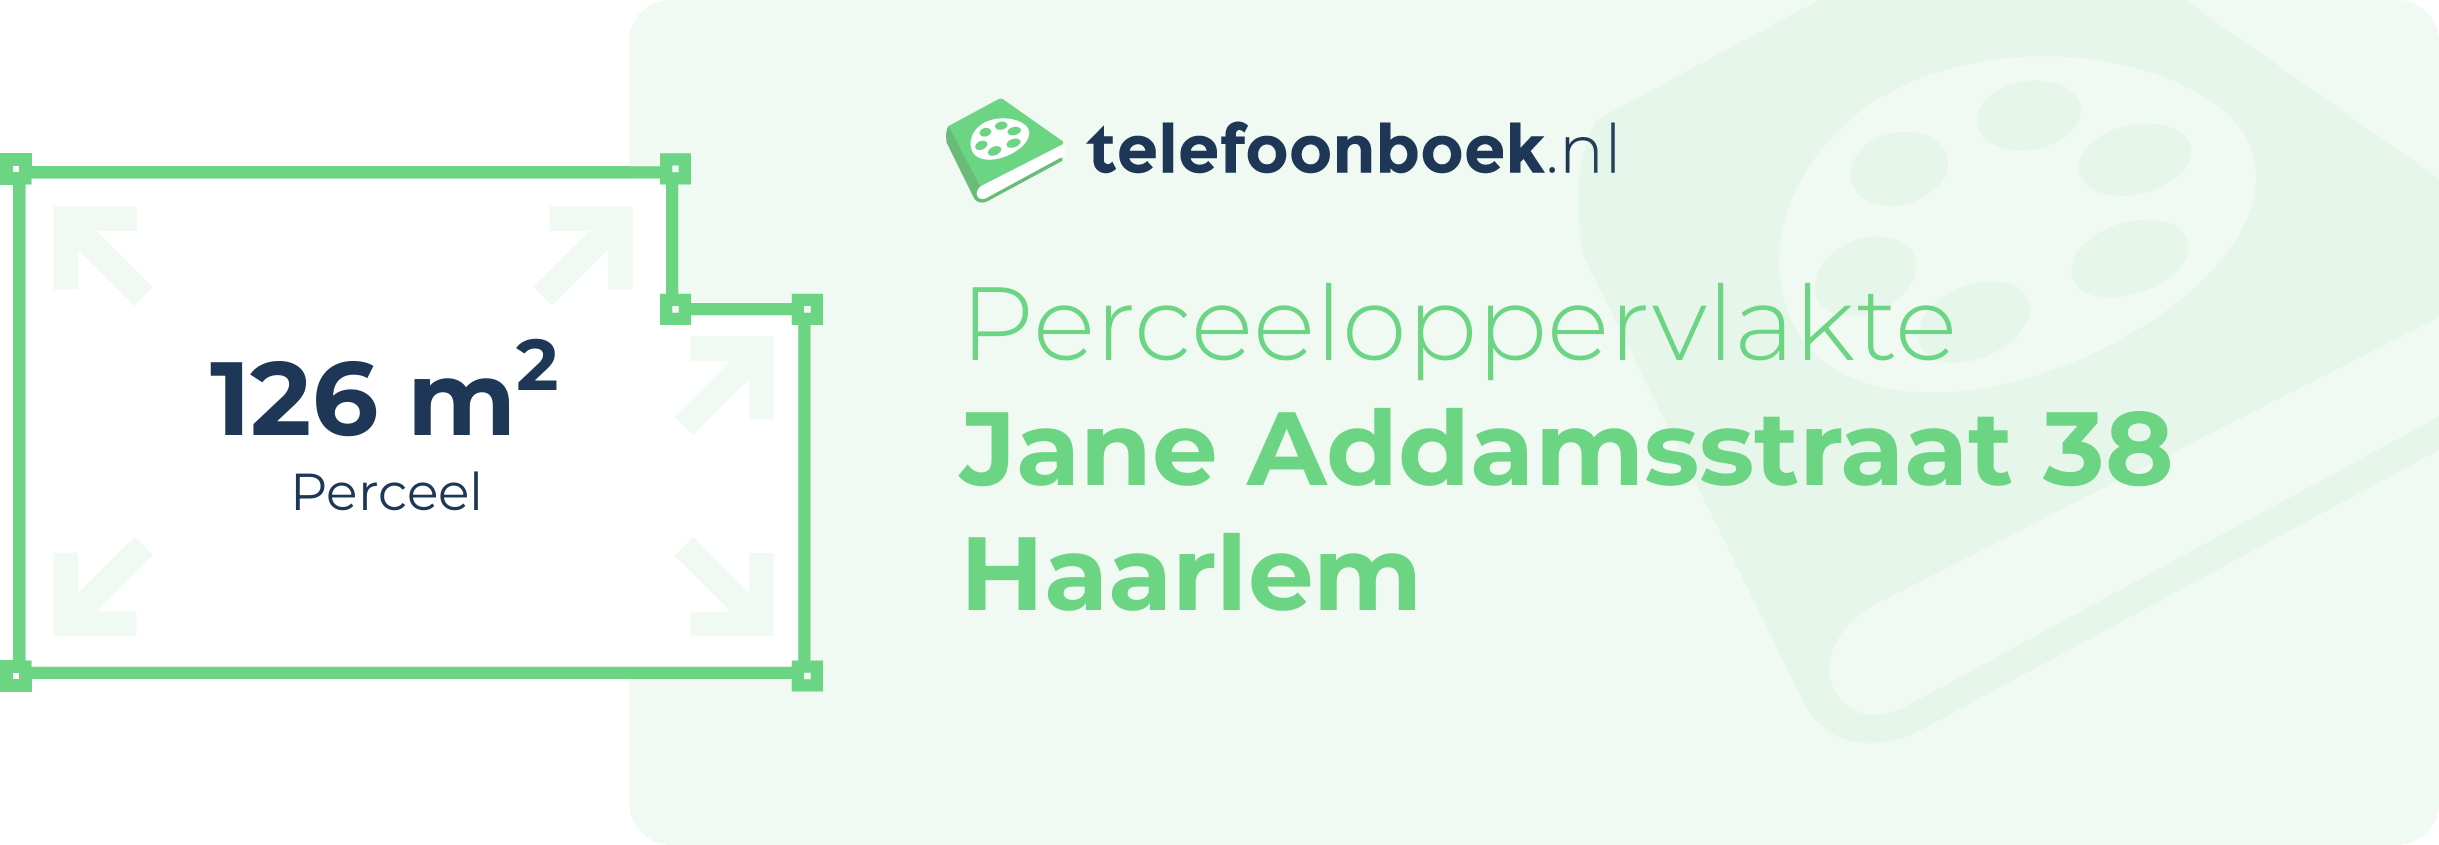 Perceeloppervlakte Jane Addamsstraat 38 Haarlem